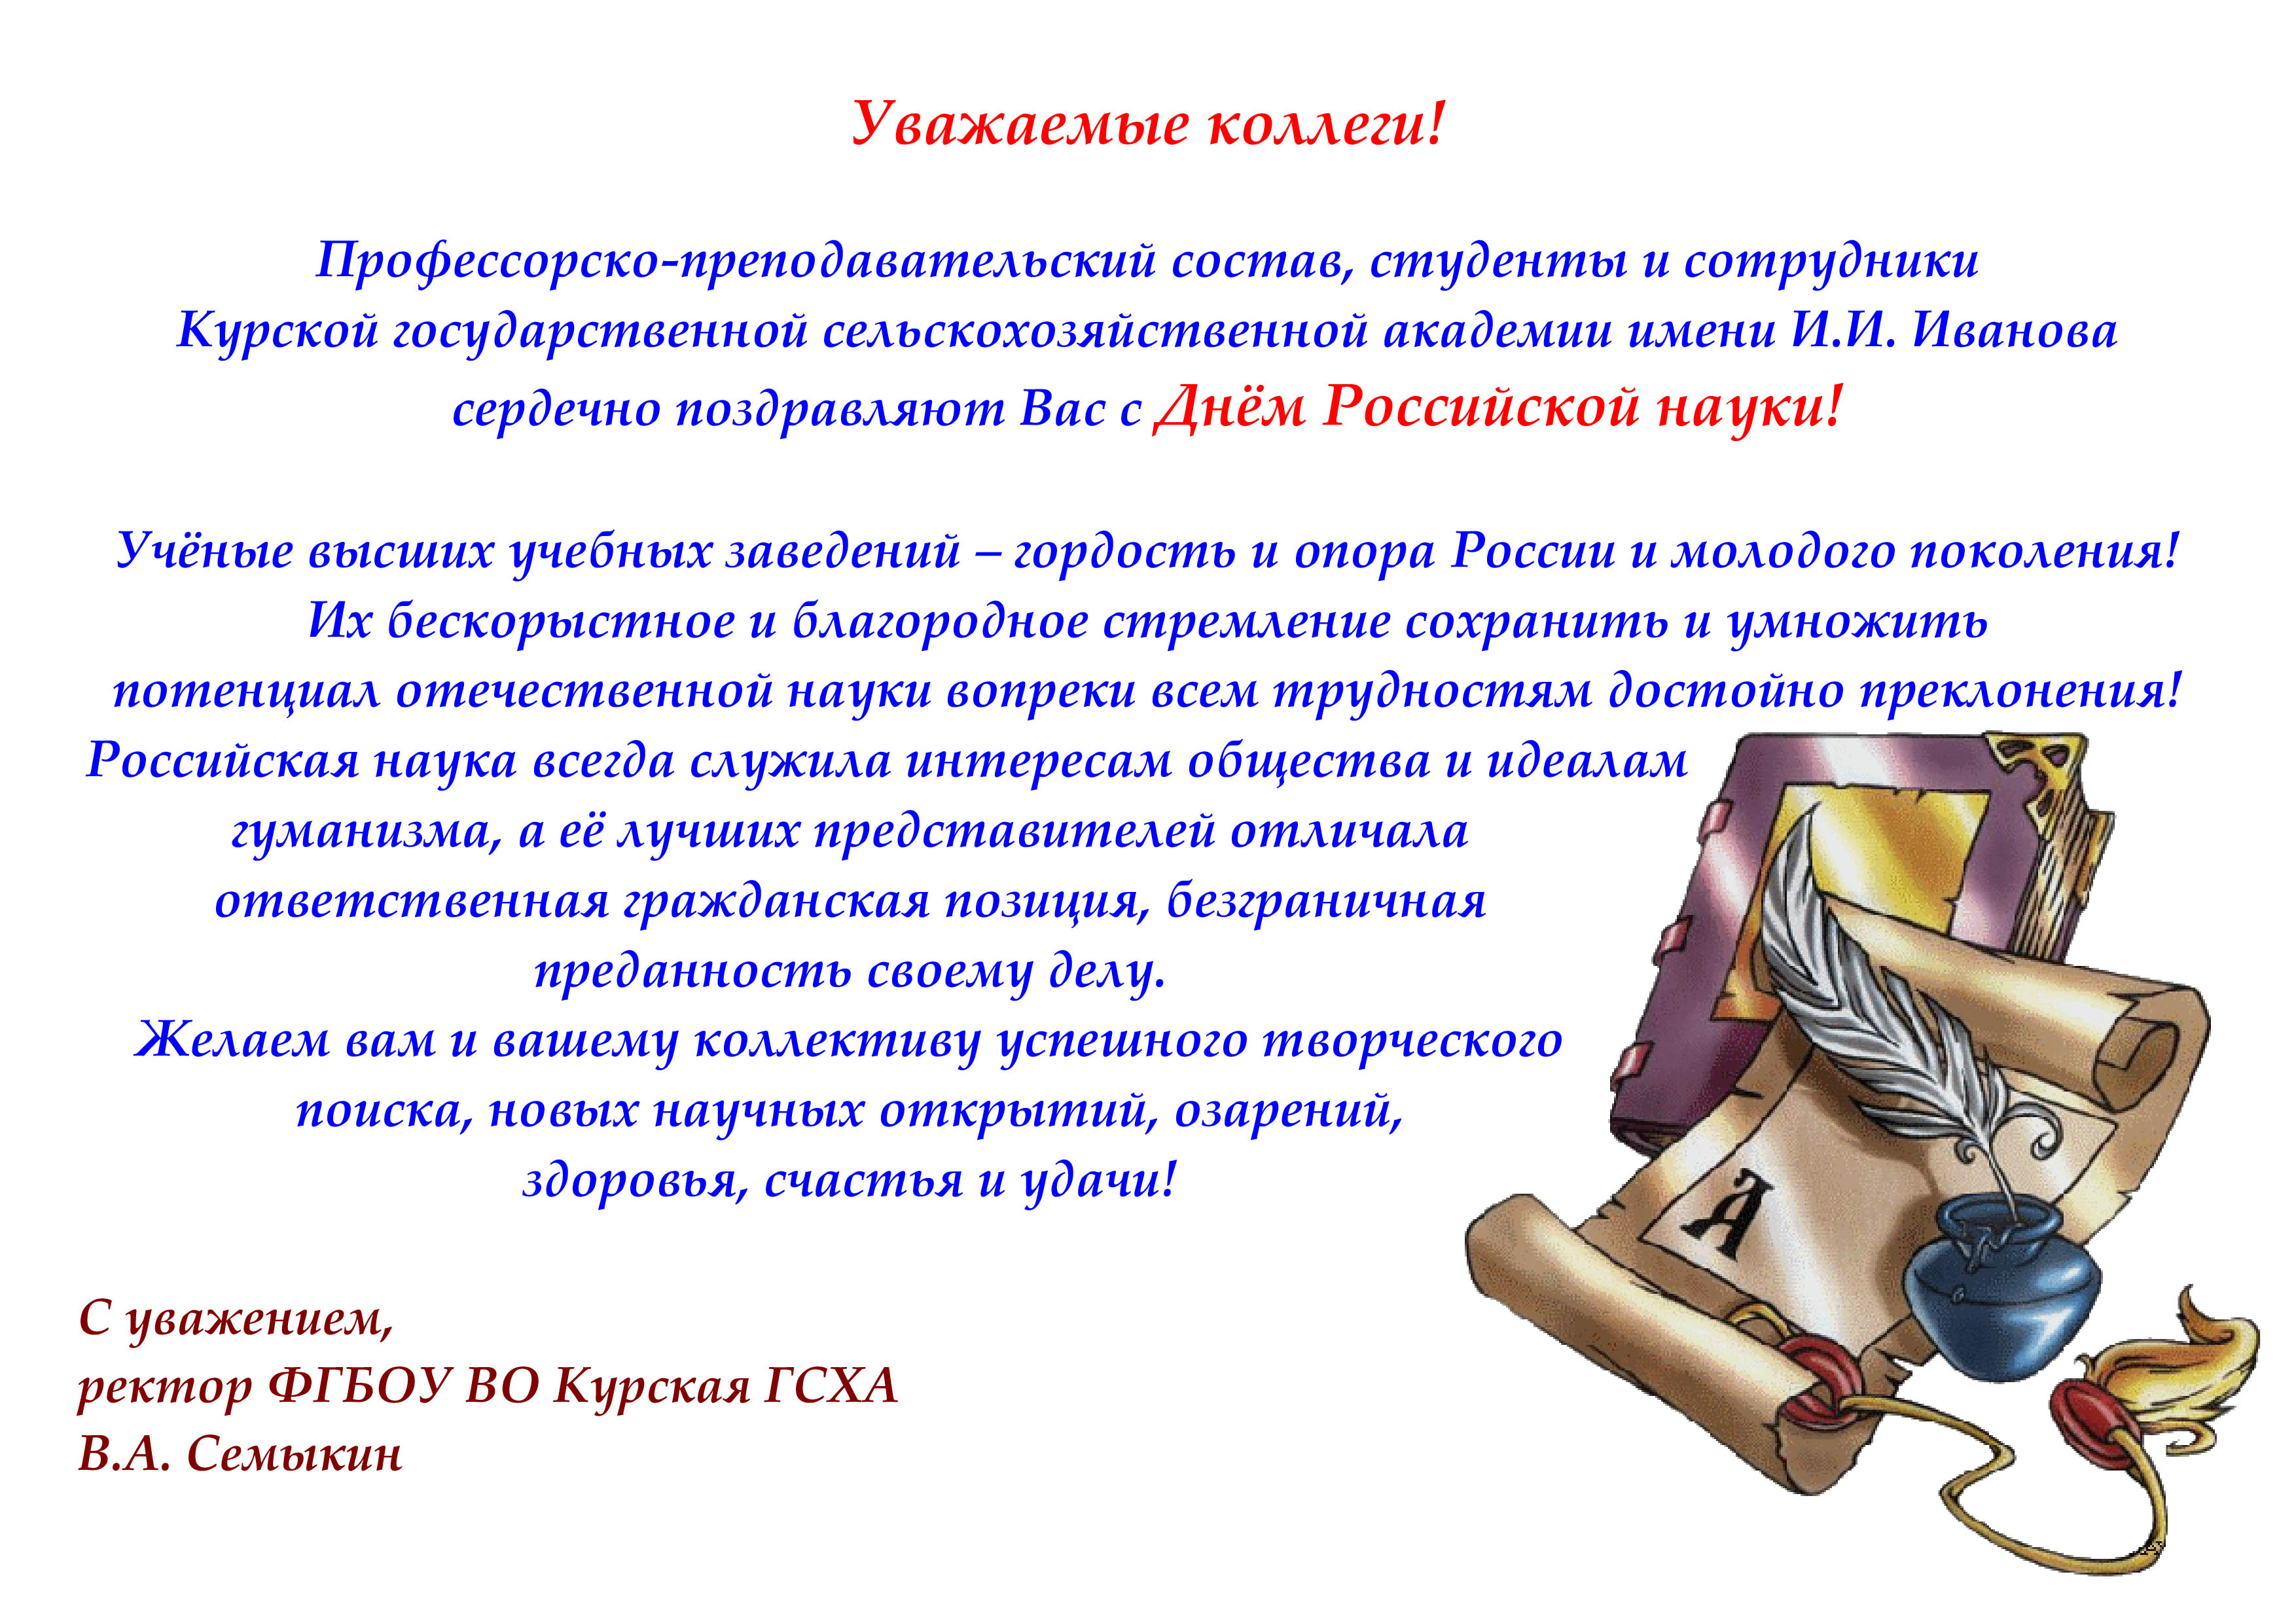 Поздравление с днем Российской науки официальное